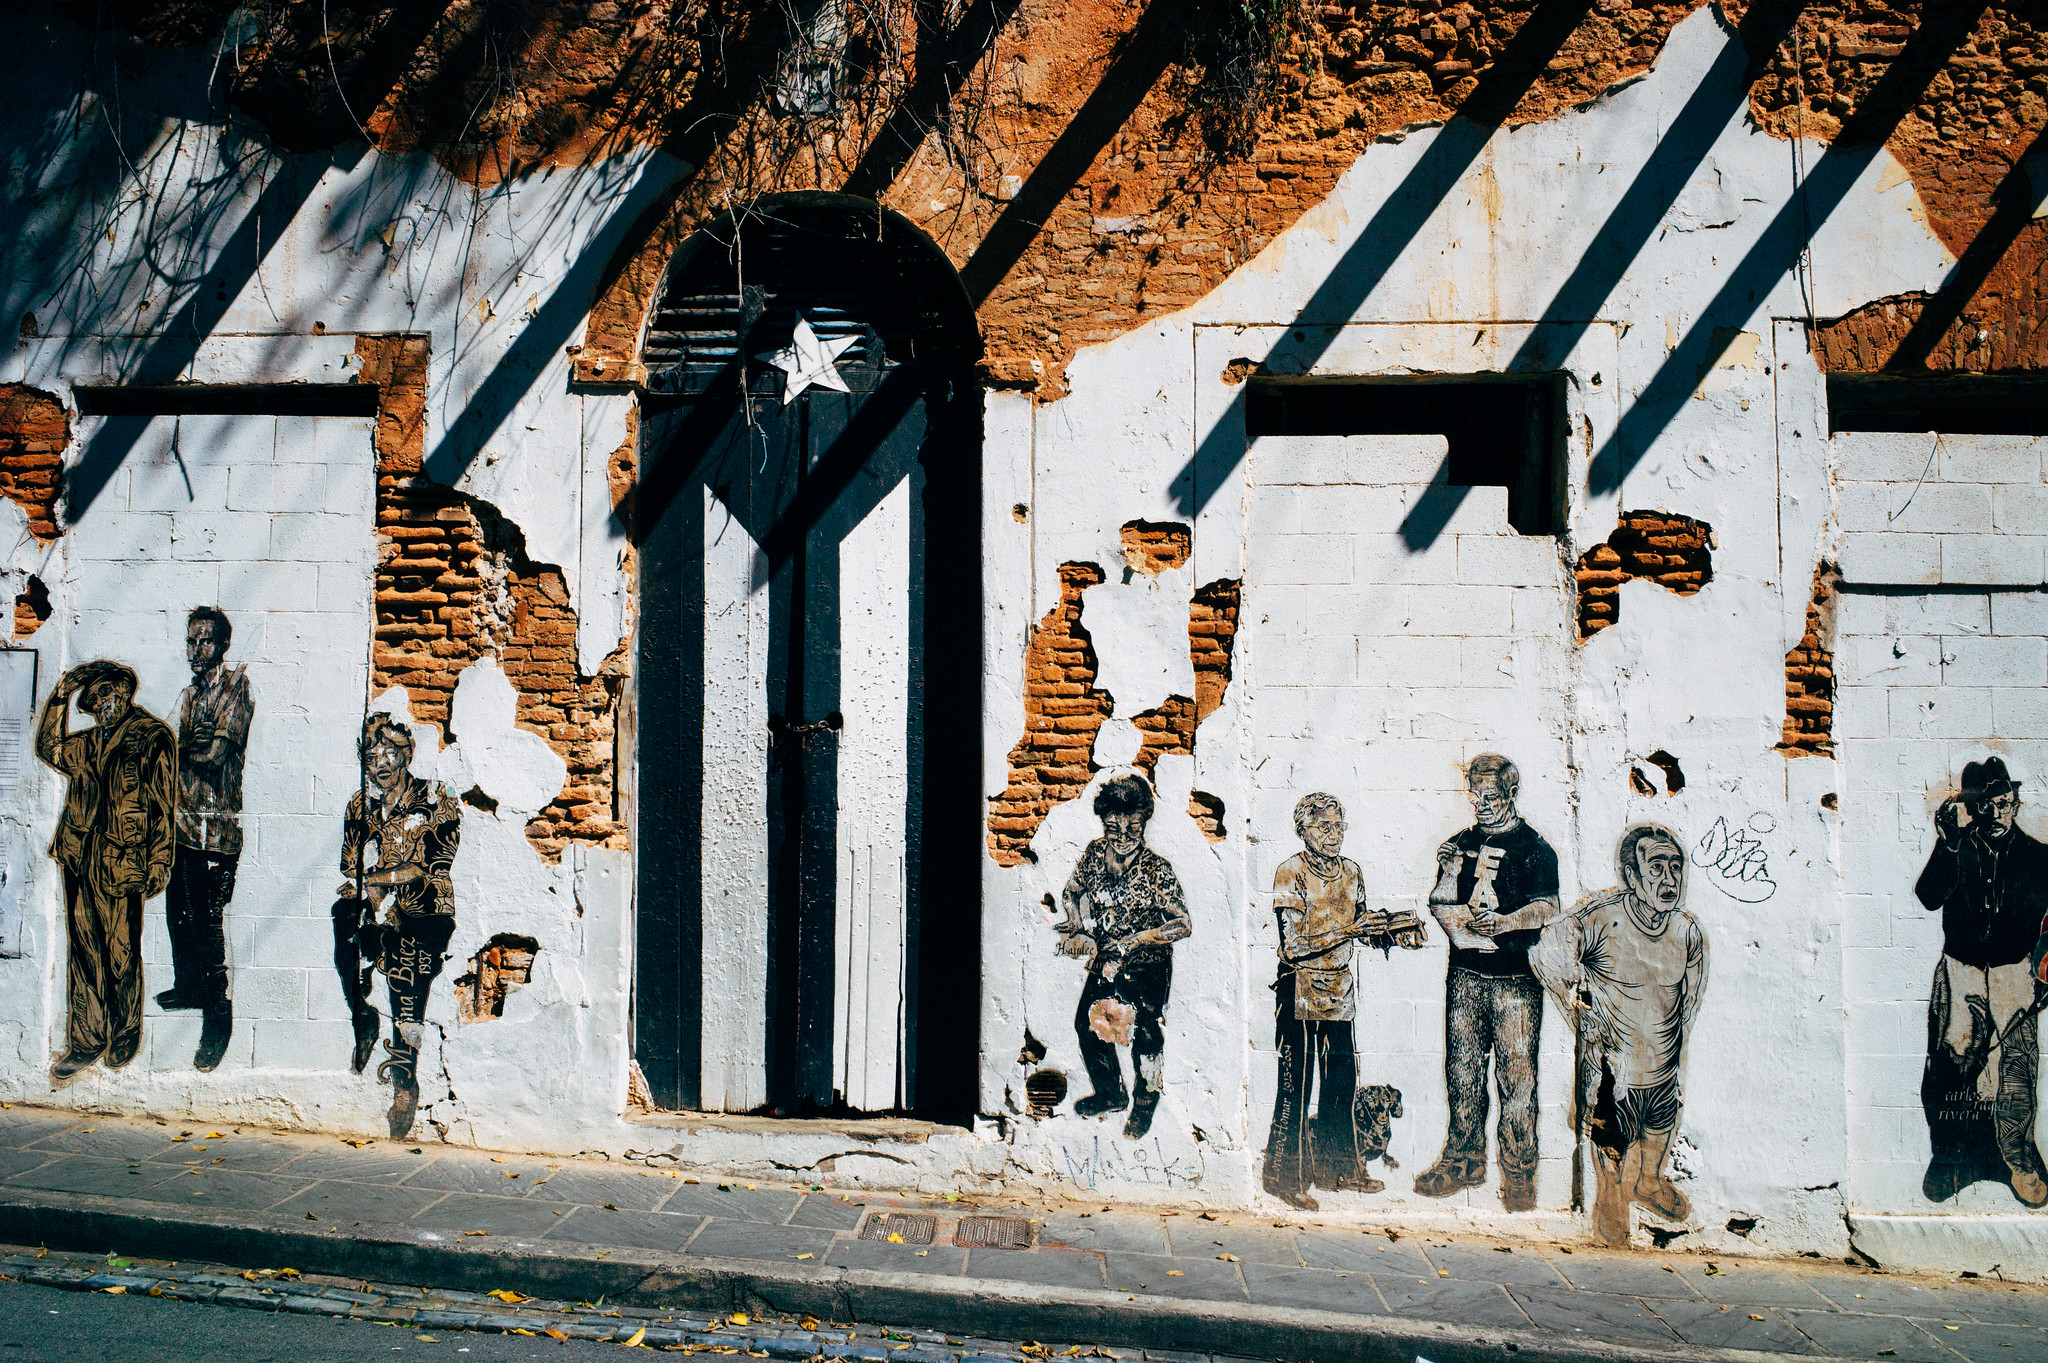 Arte callejero en el Viejo San Juan, Puerto Rico. Foto: Flickr / burnedcity